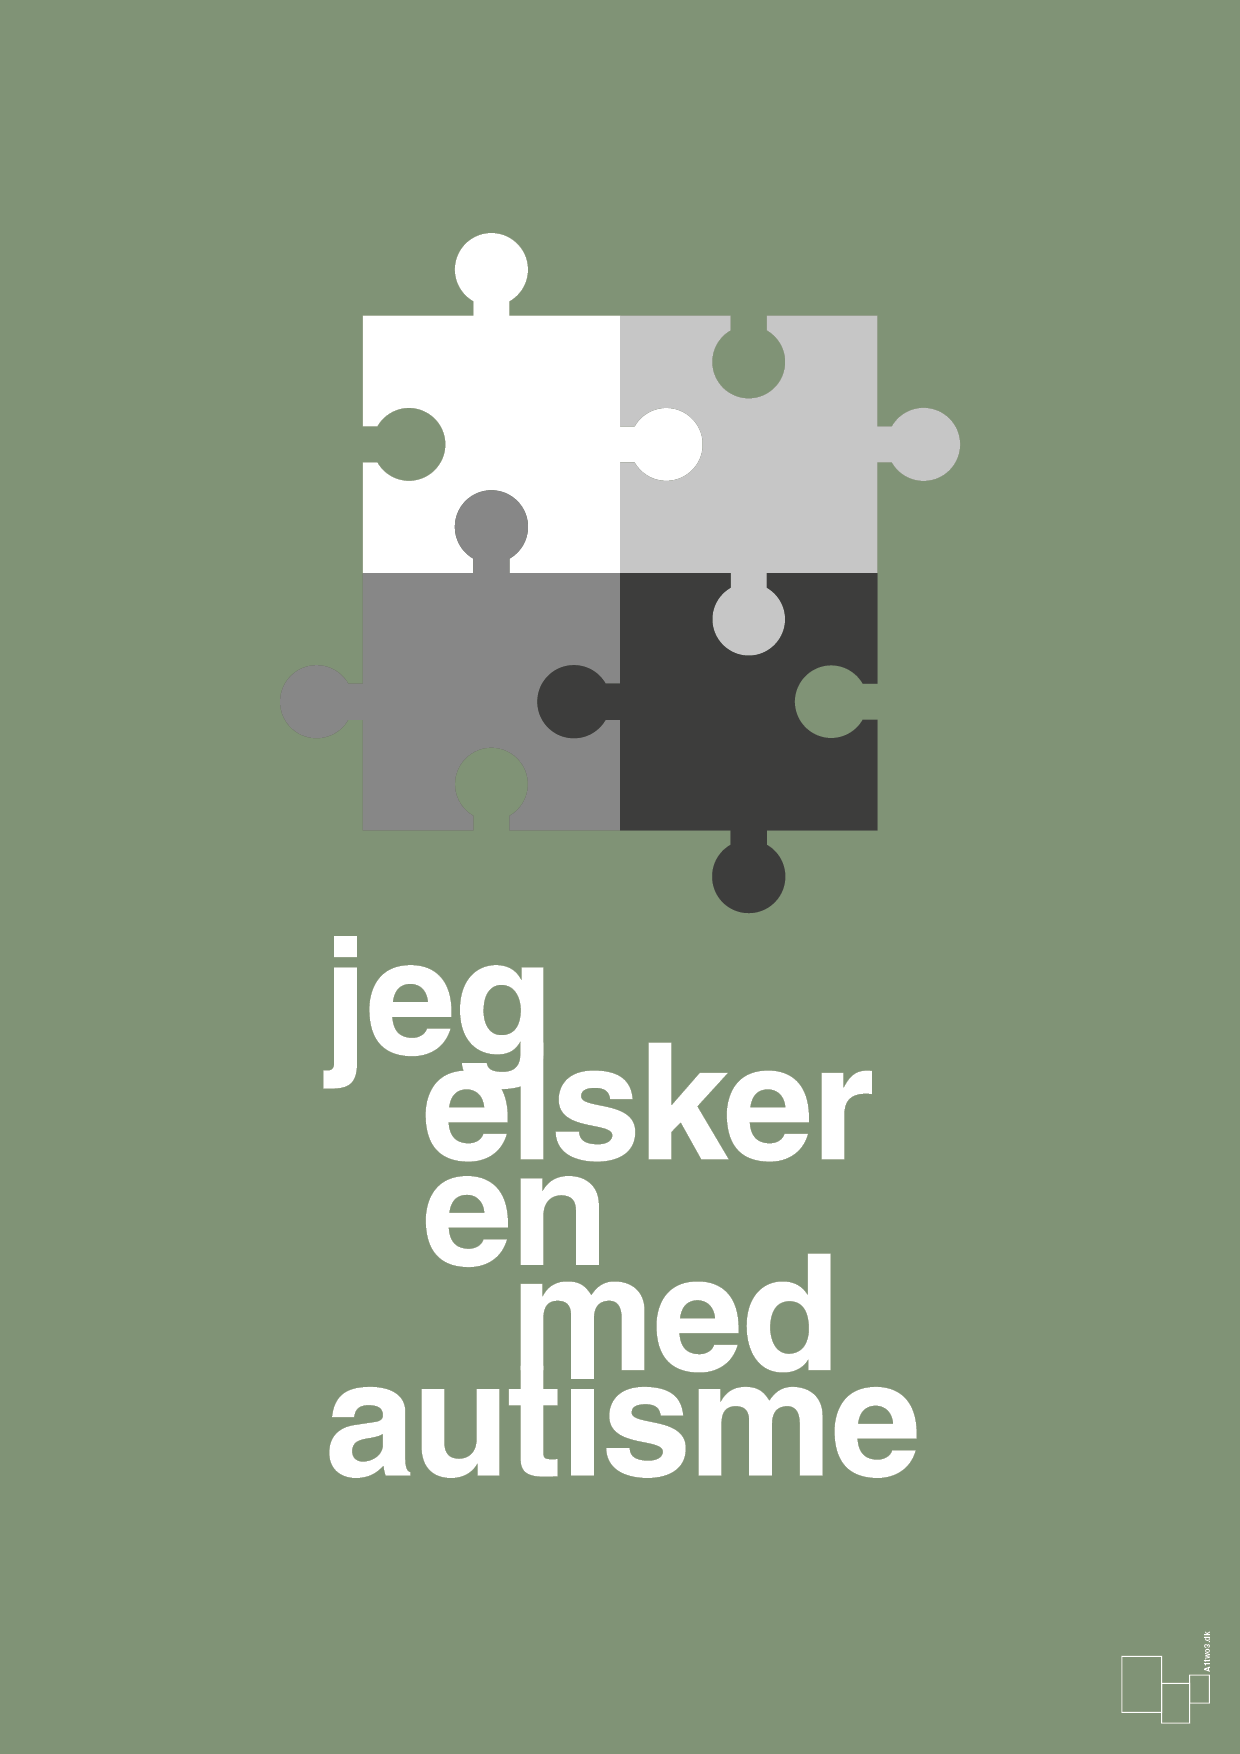 jeg elsker en med autisme - Plakat med Samfund i Jade